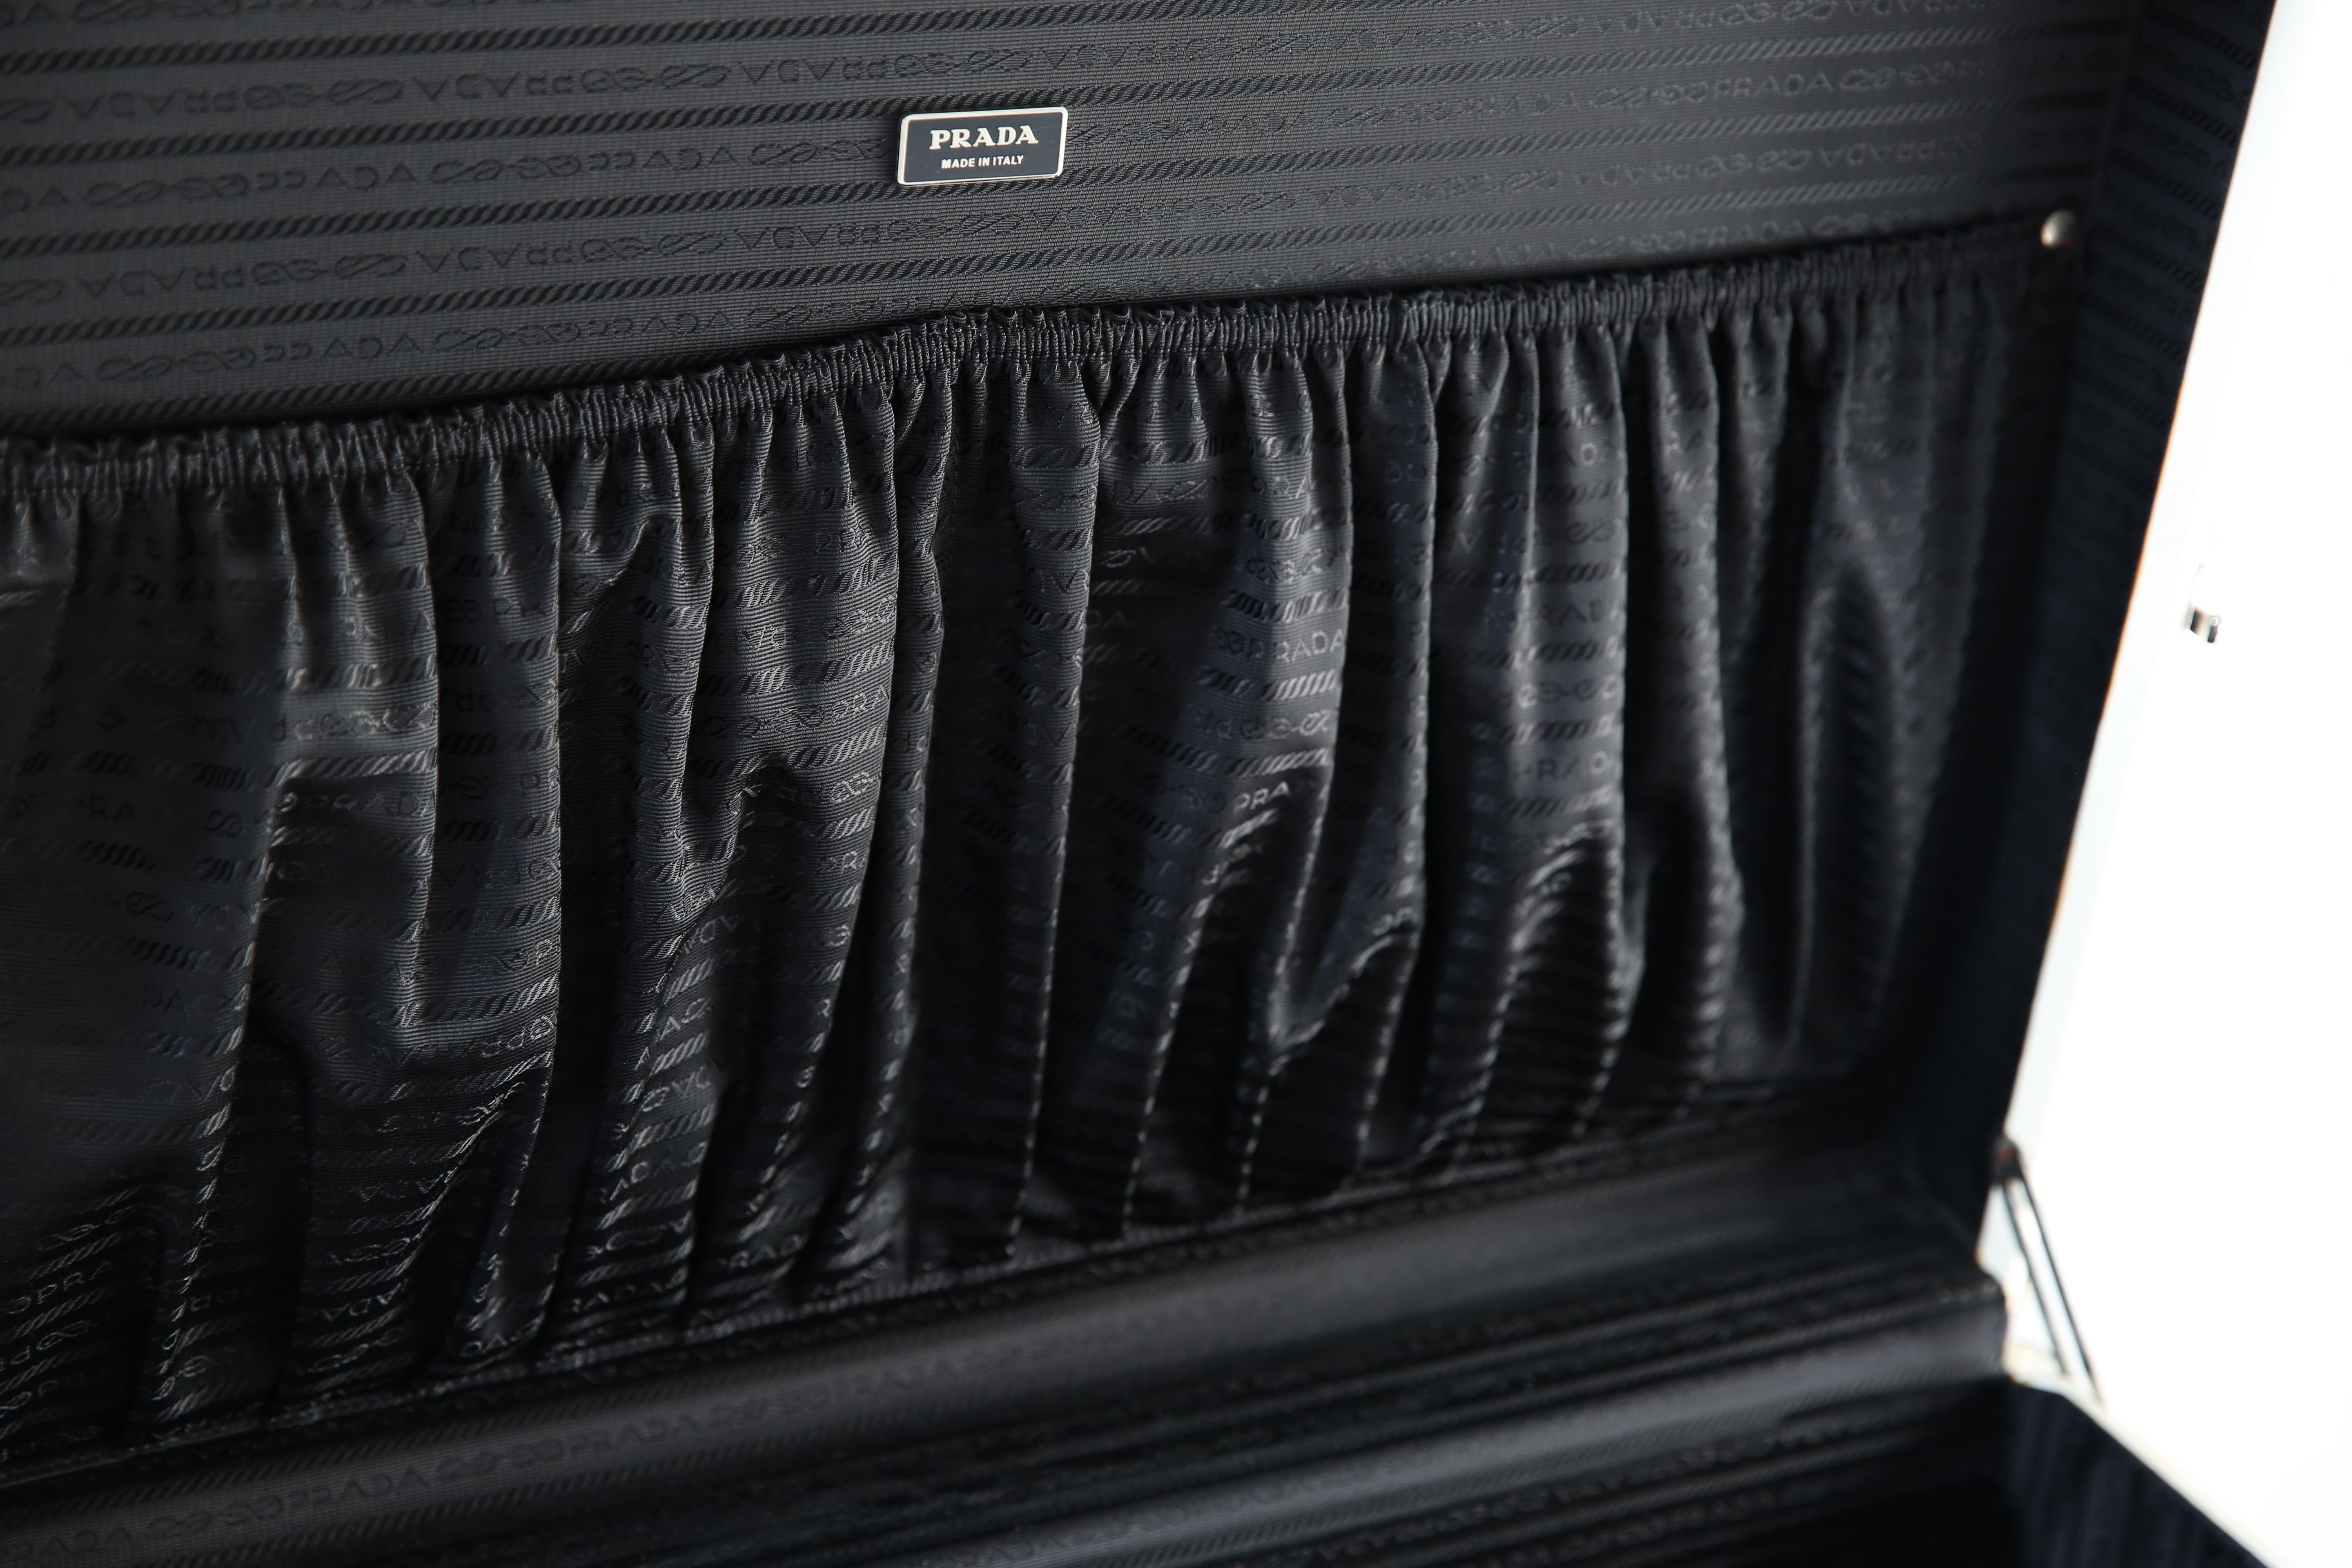 Prada Pergamena vintage style ivory black hard leather luggage bag suitcase case For Sale 5